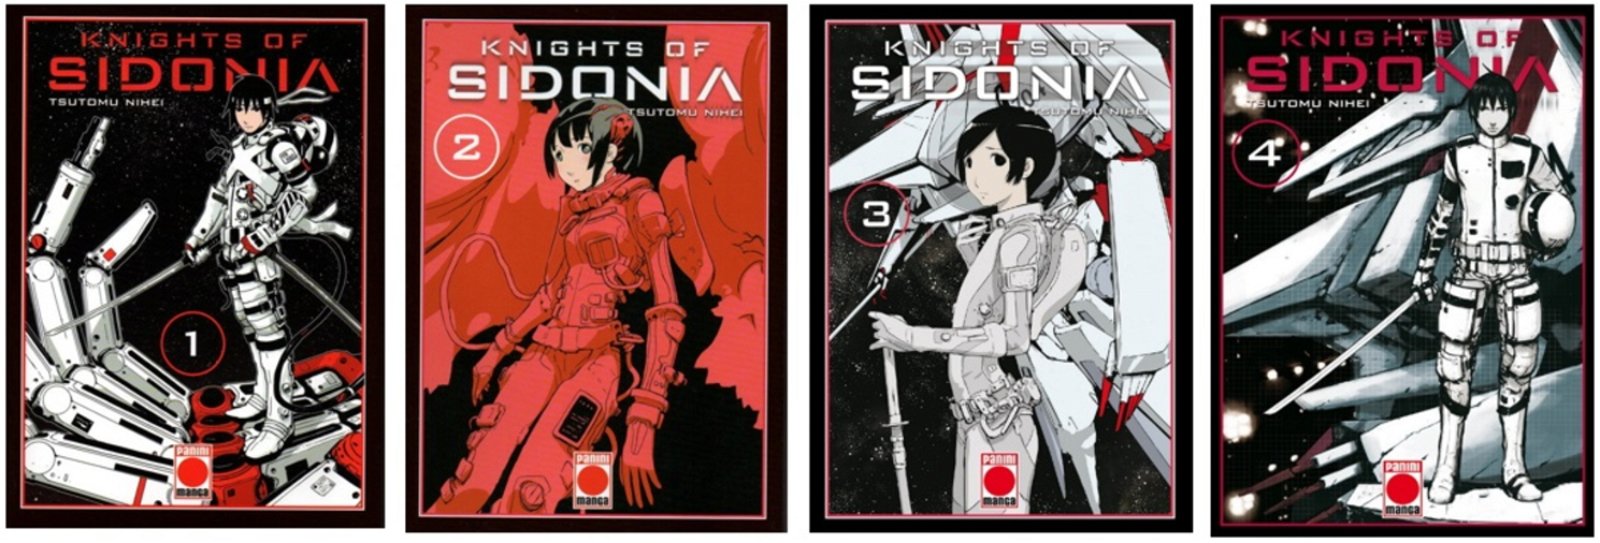 No Solo Gaming: Knights of Sidonia de Tsutomu Nihei